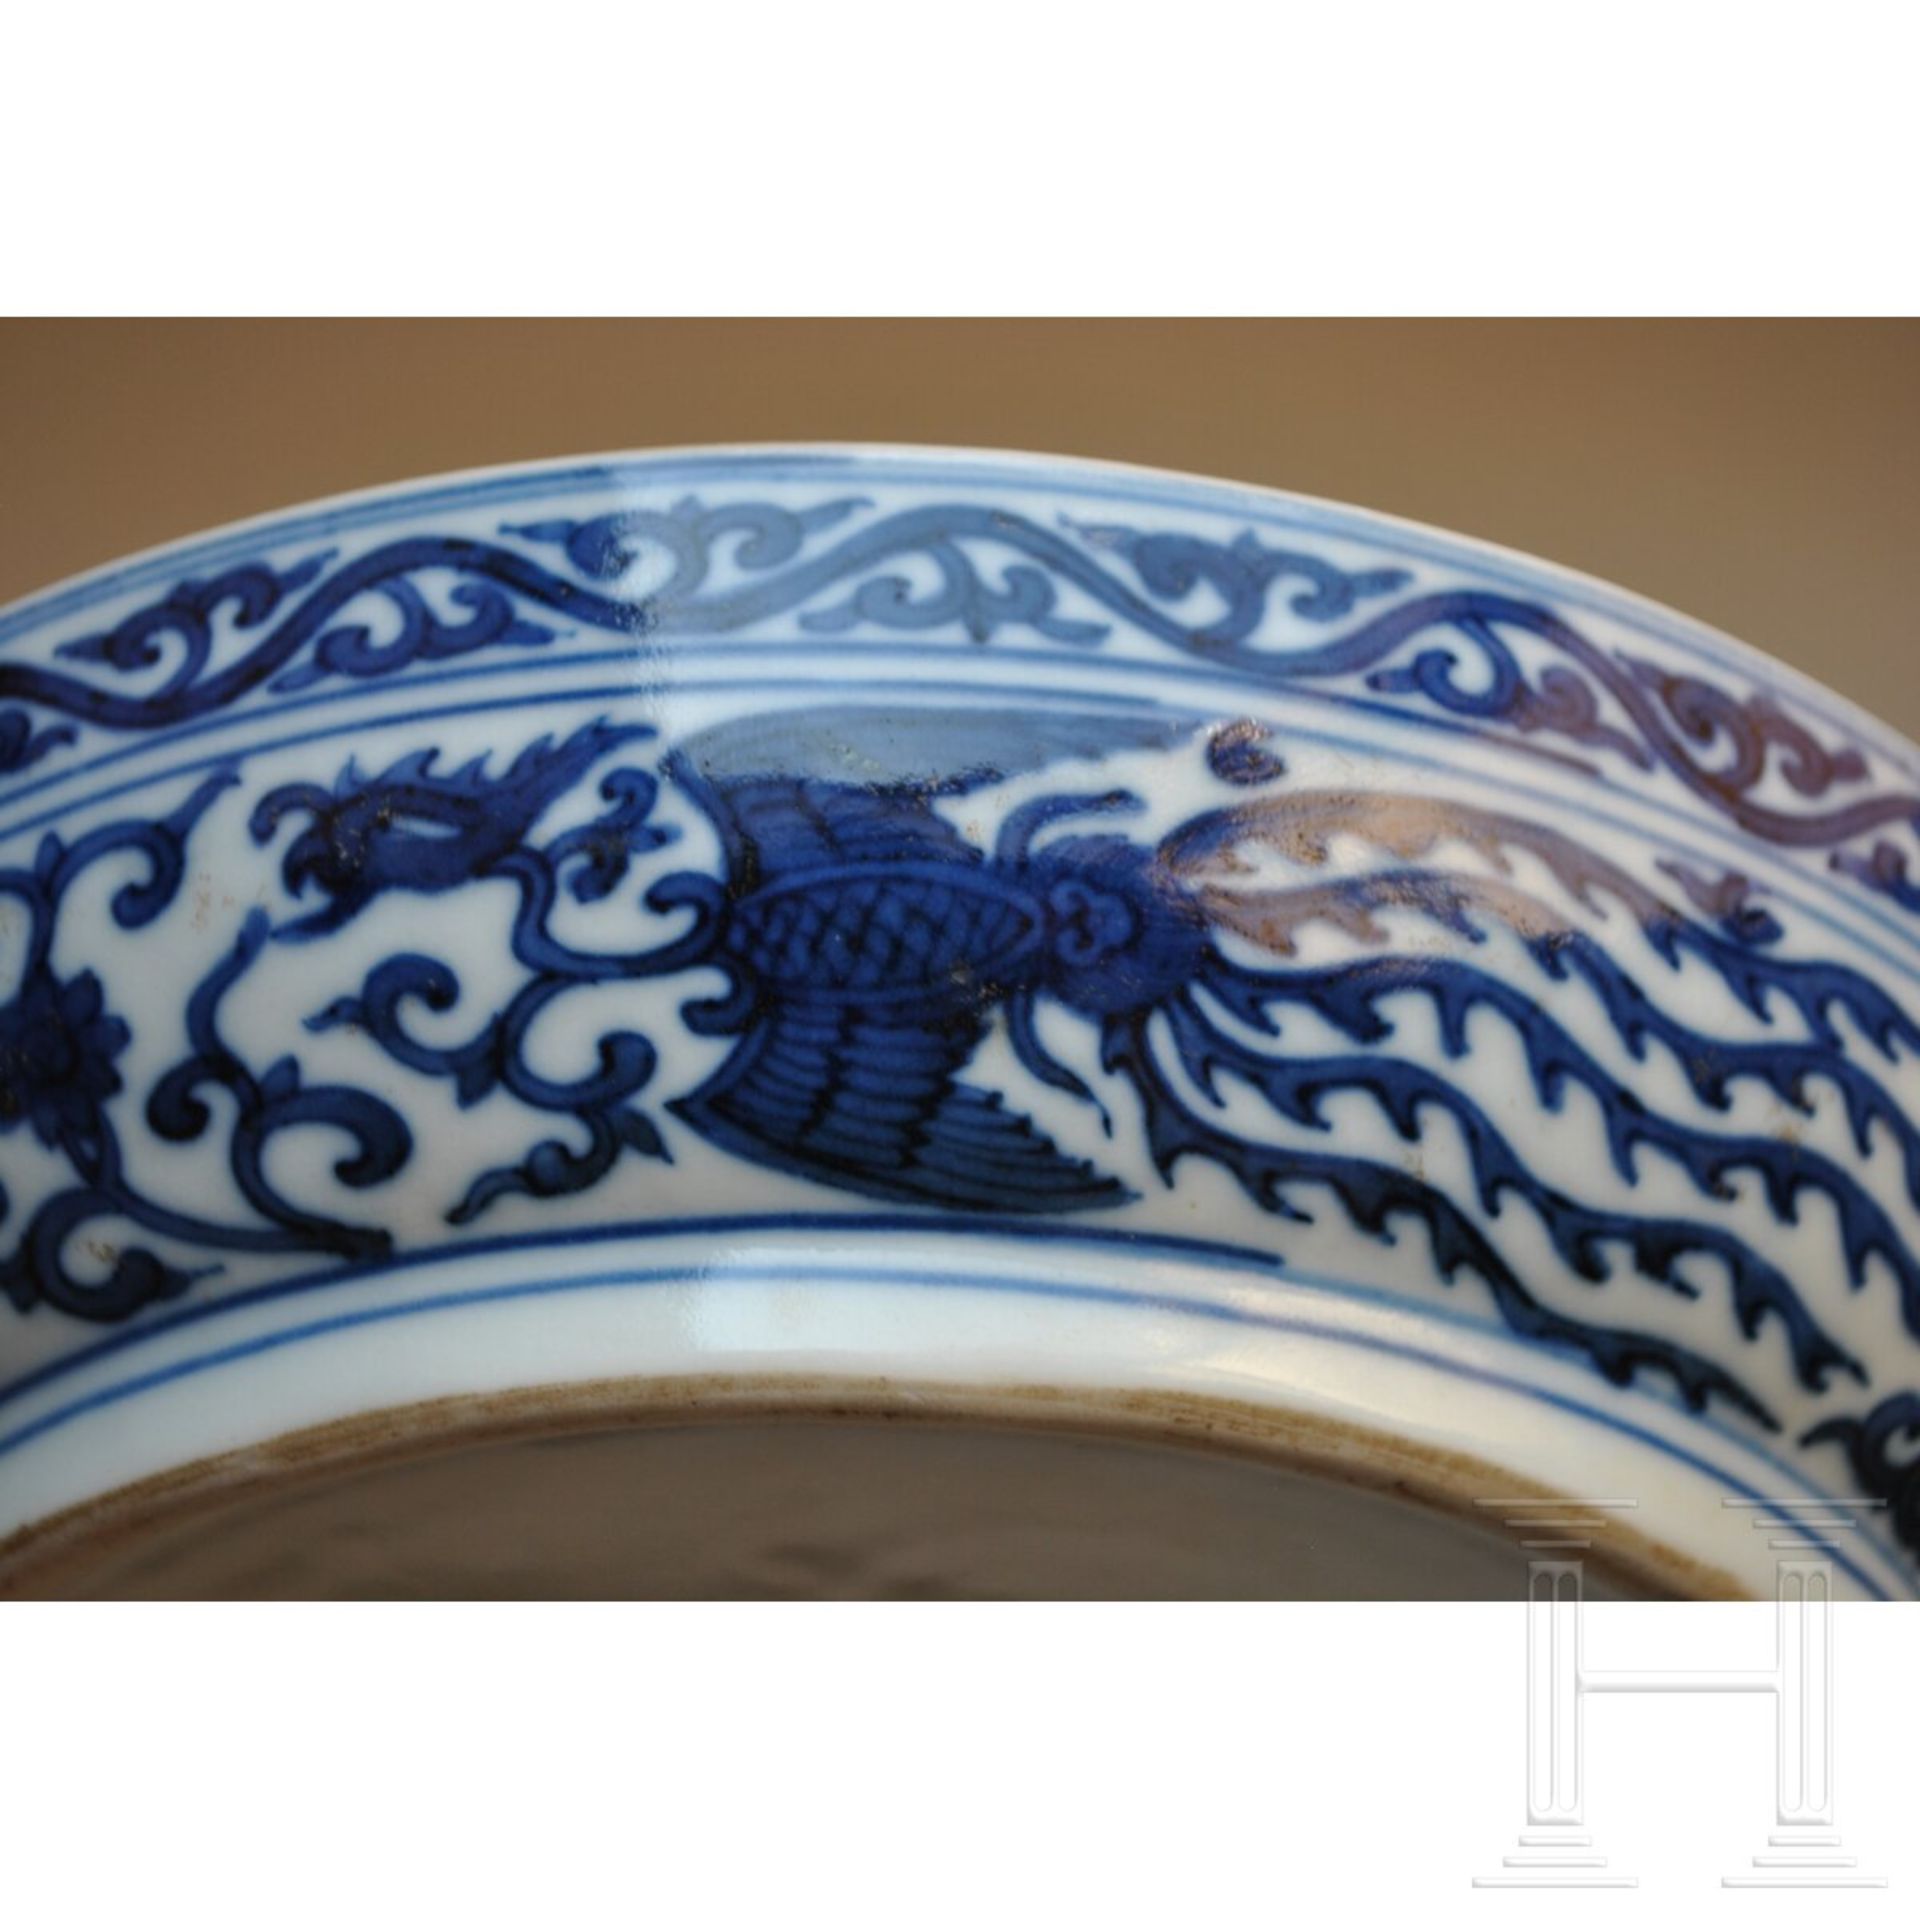 Große blaue-weiße Deckeldose mit Drache und Wanli-Sechszeichenmarke, China, 18./19. Jhdt. - Image 11 of 17